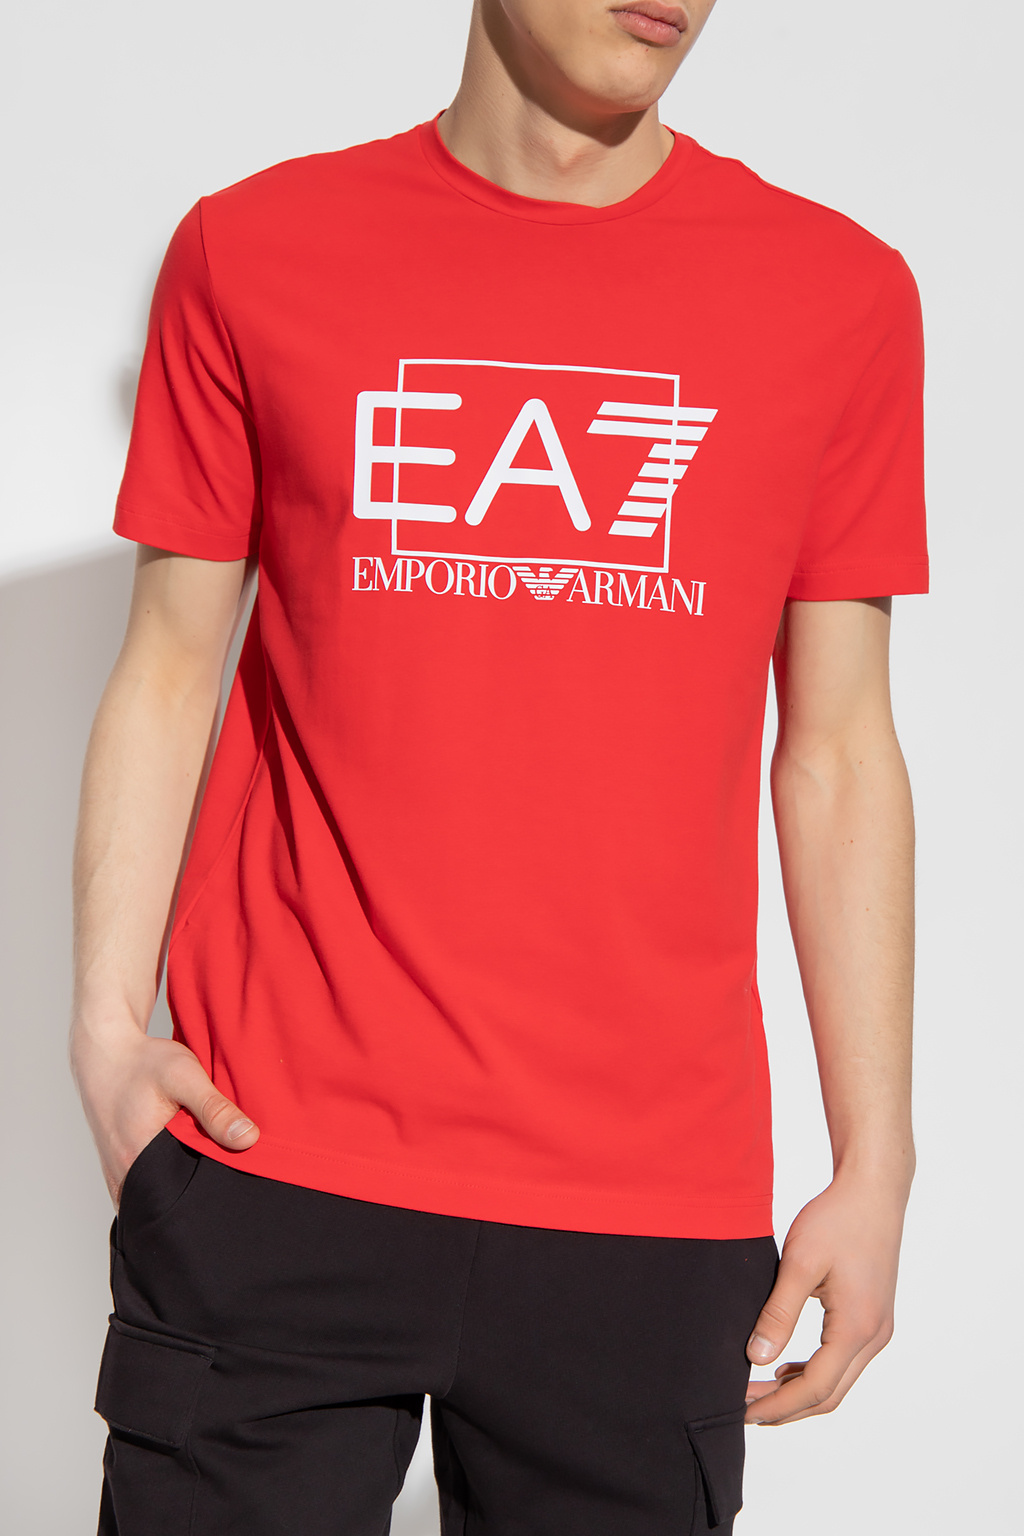 EA7 Emporio armani Sunglasses Cotton T-shirt